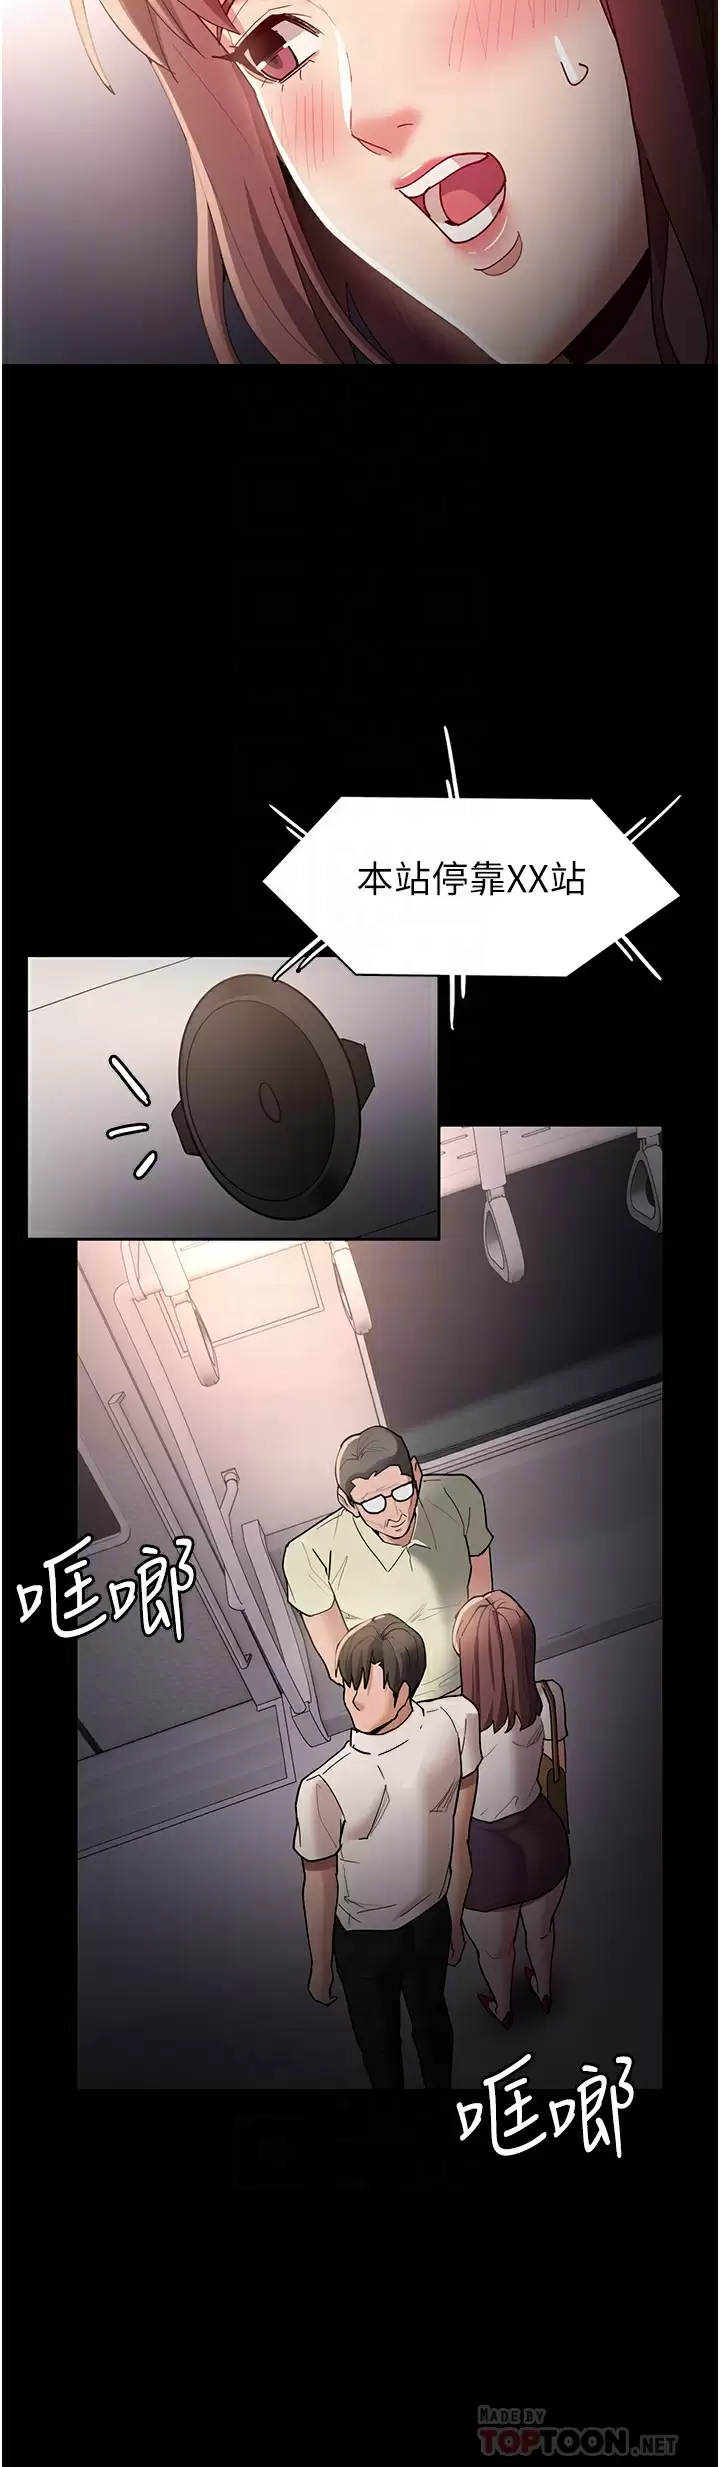 韩国污漫画 癡漢成癮 第13话 自投罗网的猎物 12